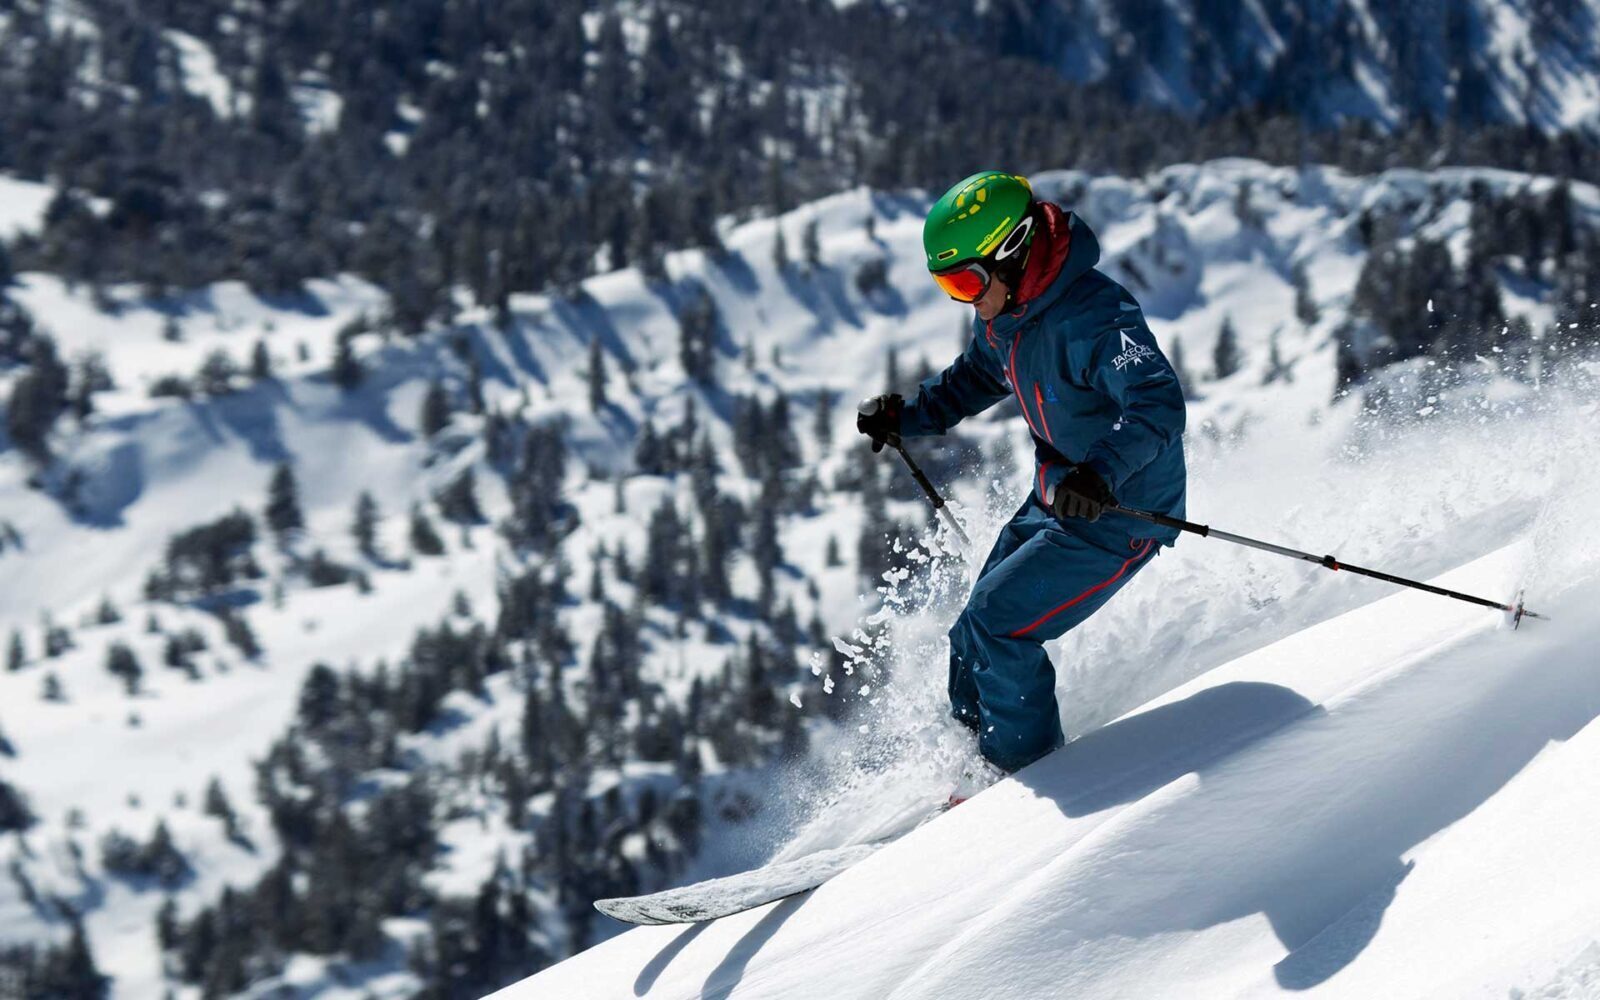 Escuela de esquí Baqueira Beret. Clases esquí y Snowboard - 1c home sf